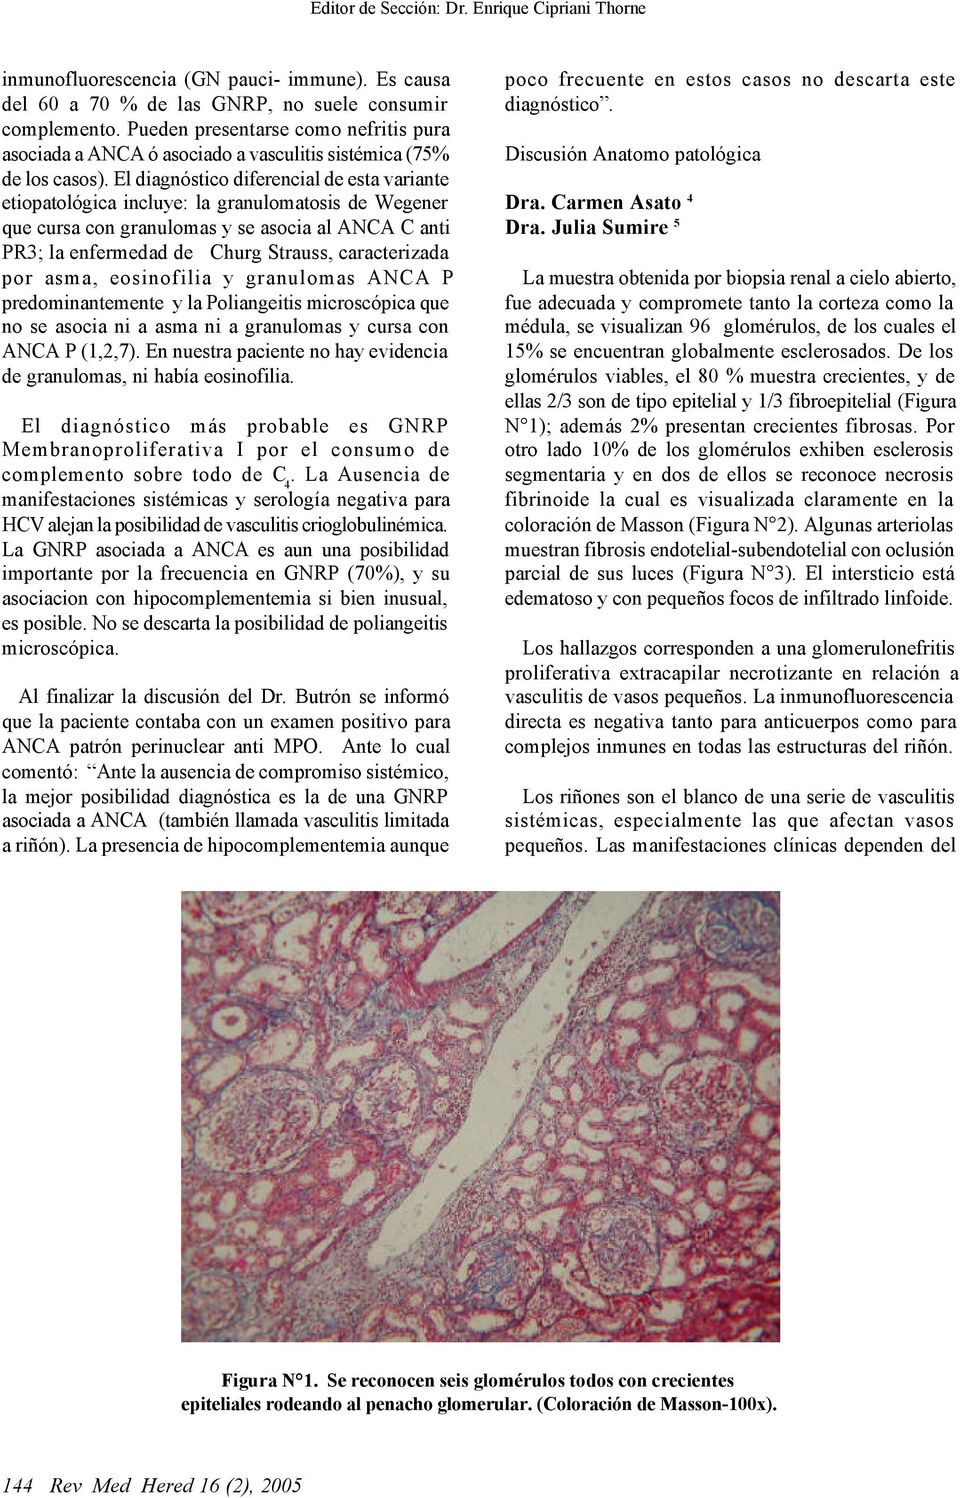 El diagnóstico diferencial de esta variante etiopatológica incluye: la granulomatosis de Wegener que cursa con granulomas y se asocia al ANCA C anti PR3; la enfermedad de Churg Strauss, caracterizada